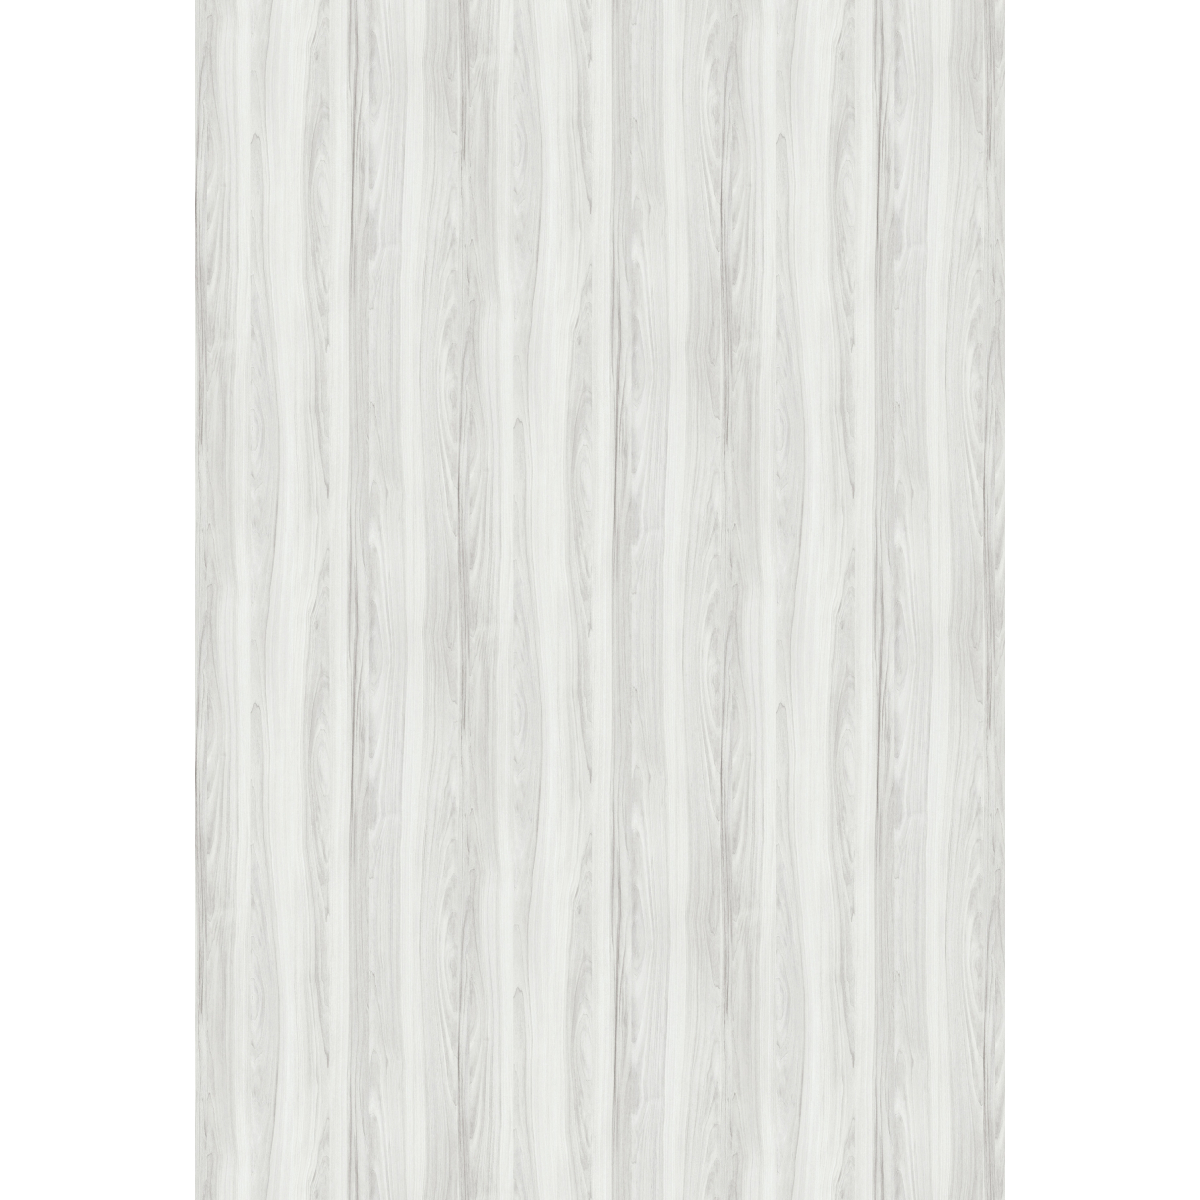 Castanha Branca - Chapa de MDF Arauco 15mm